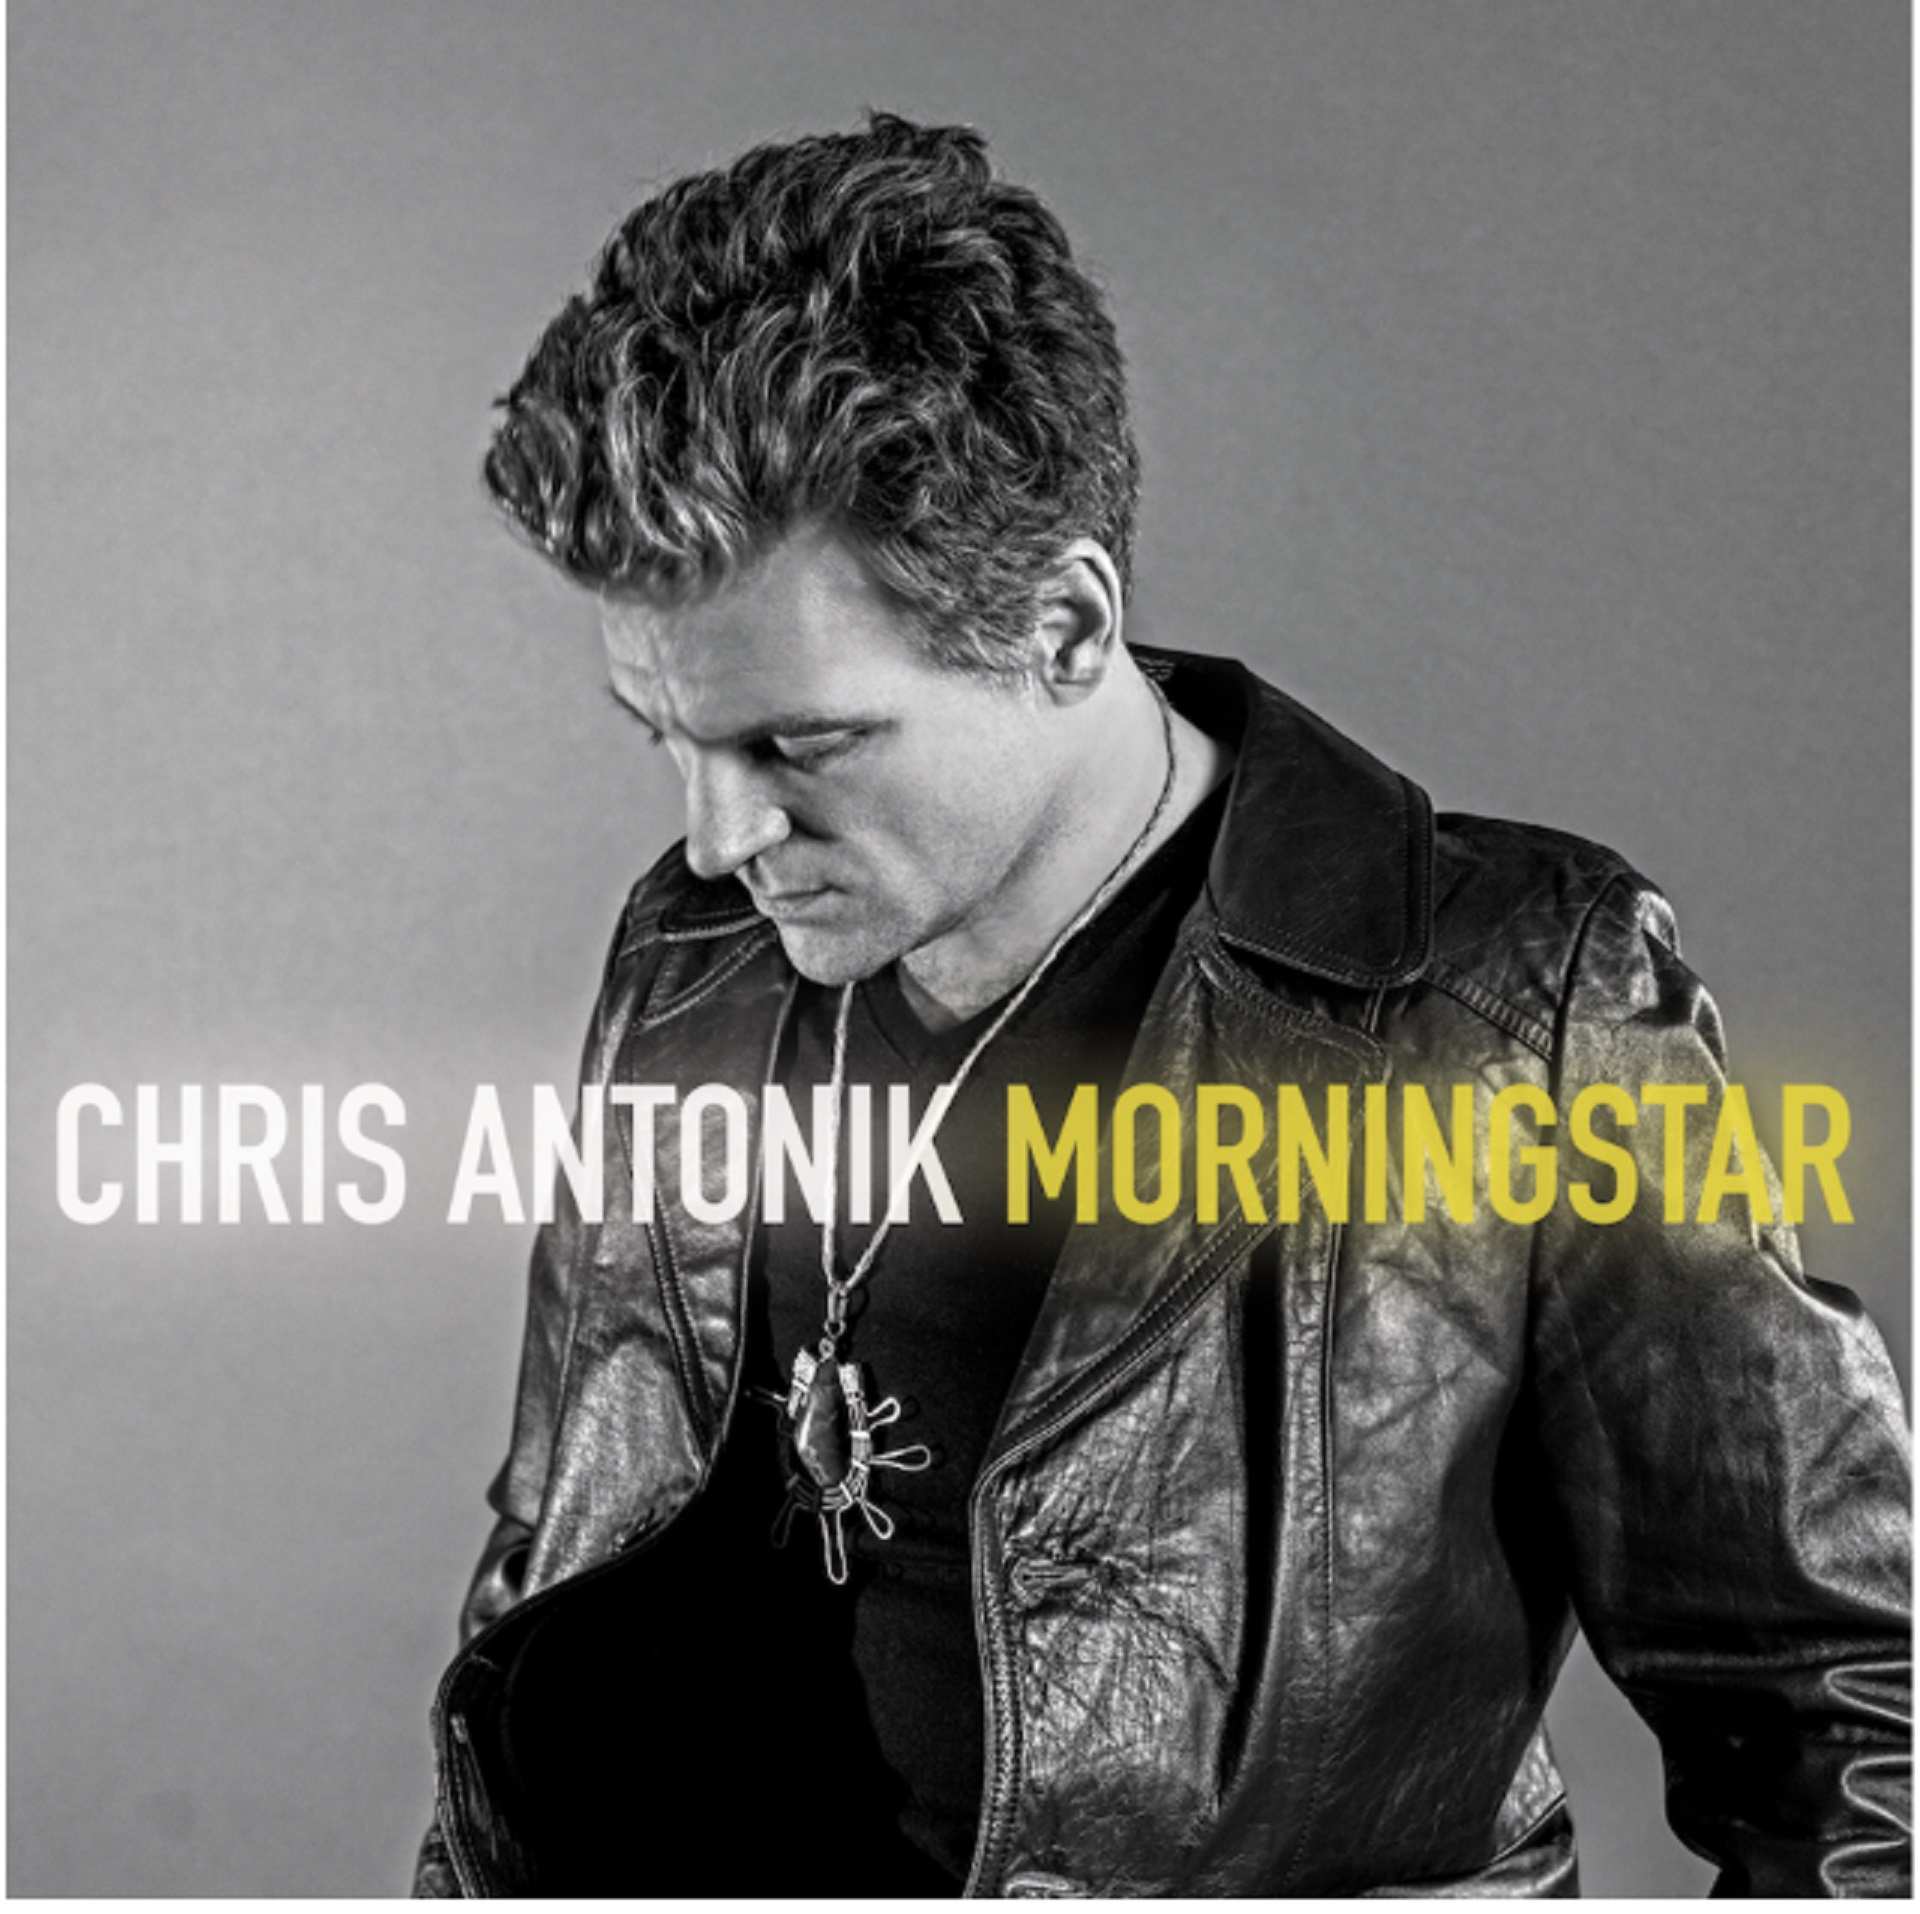 Blues-Rocker Chris Antonik Releases 'Morningstar' Album